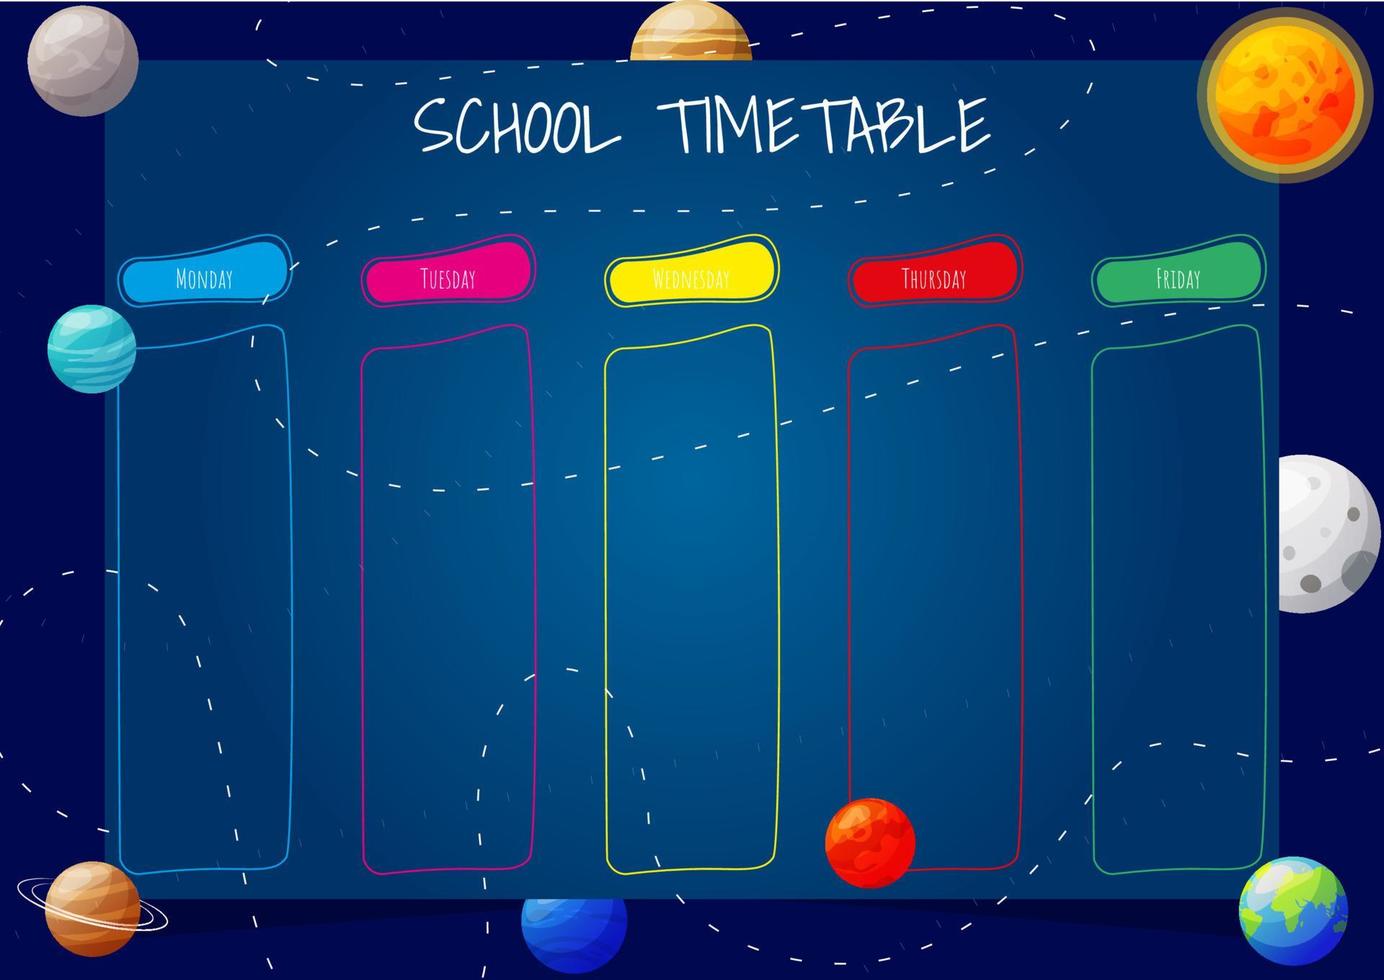 horario escolar para niños con planetas de dibujos animados del sistema solar en el fondo. plantilla de tamaño a4. ilustración vectorial vector